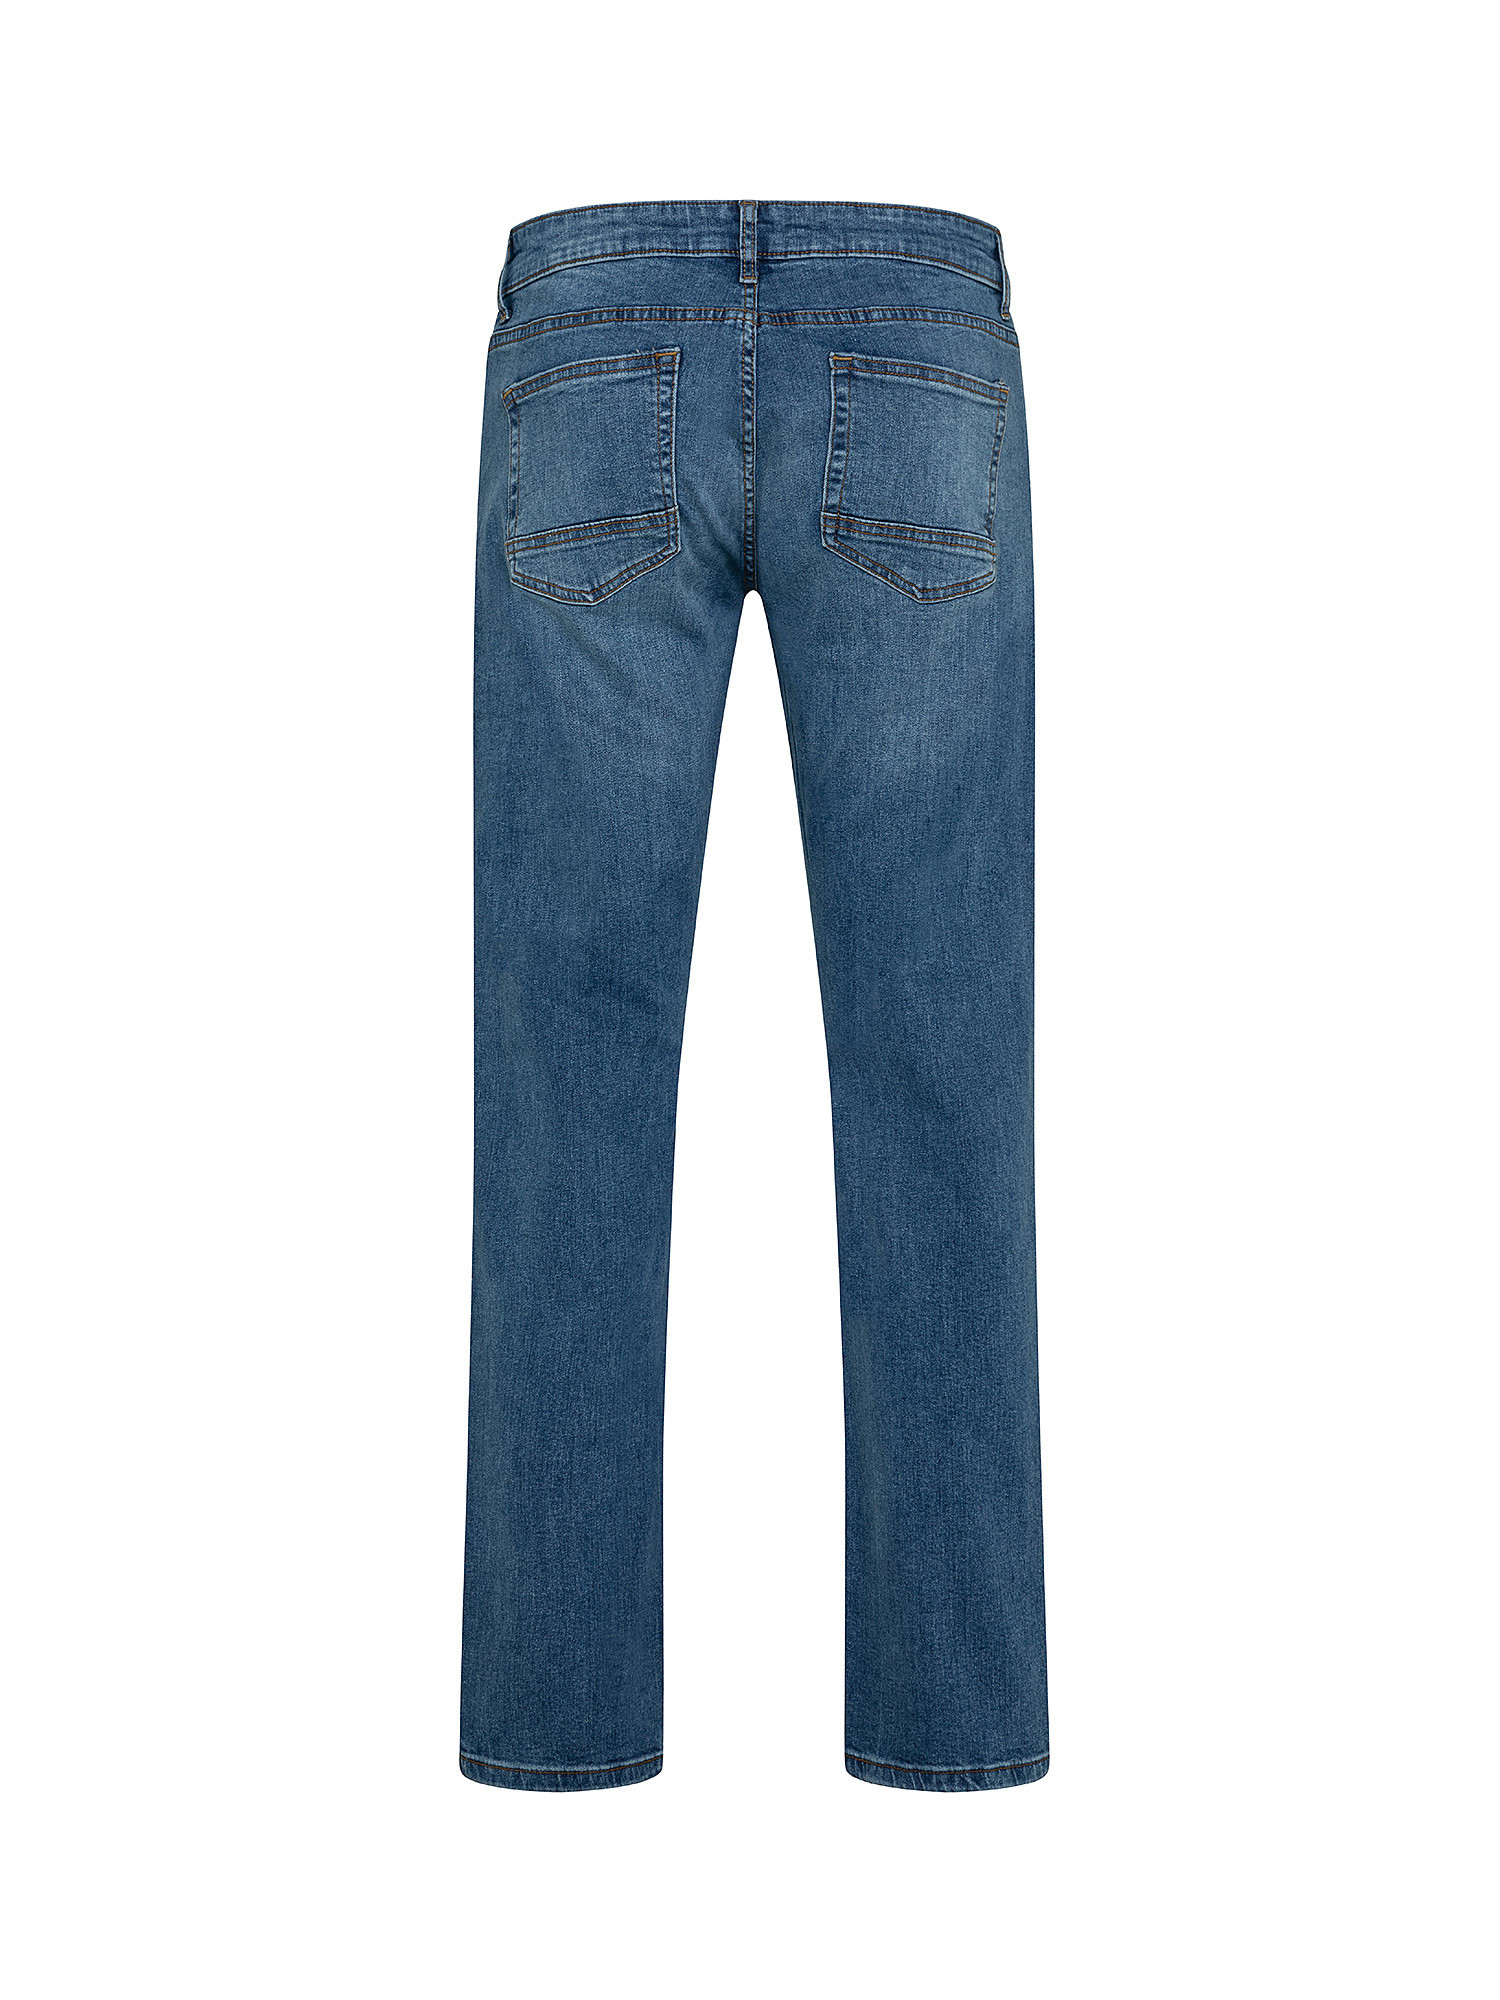 Jeans 5 tasche slim cotone stretch, Blu, large